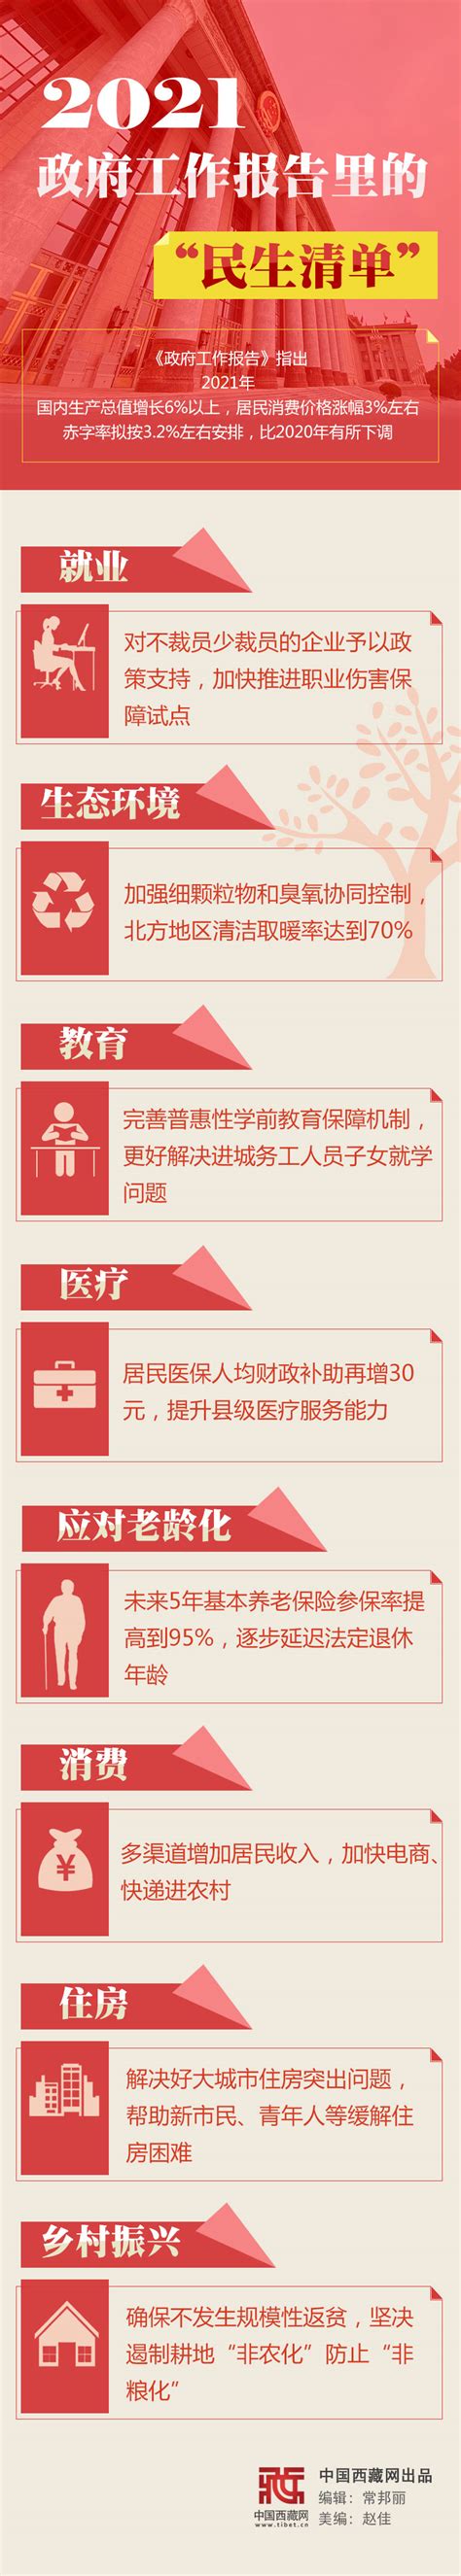 图解｜2021政府工作报告里的“民生清单” - 中国日报网